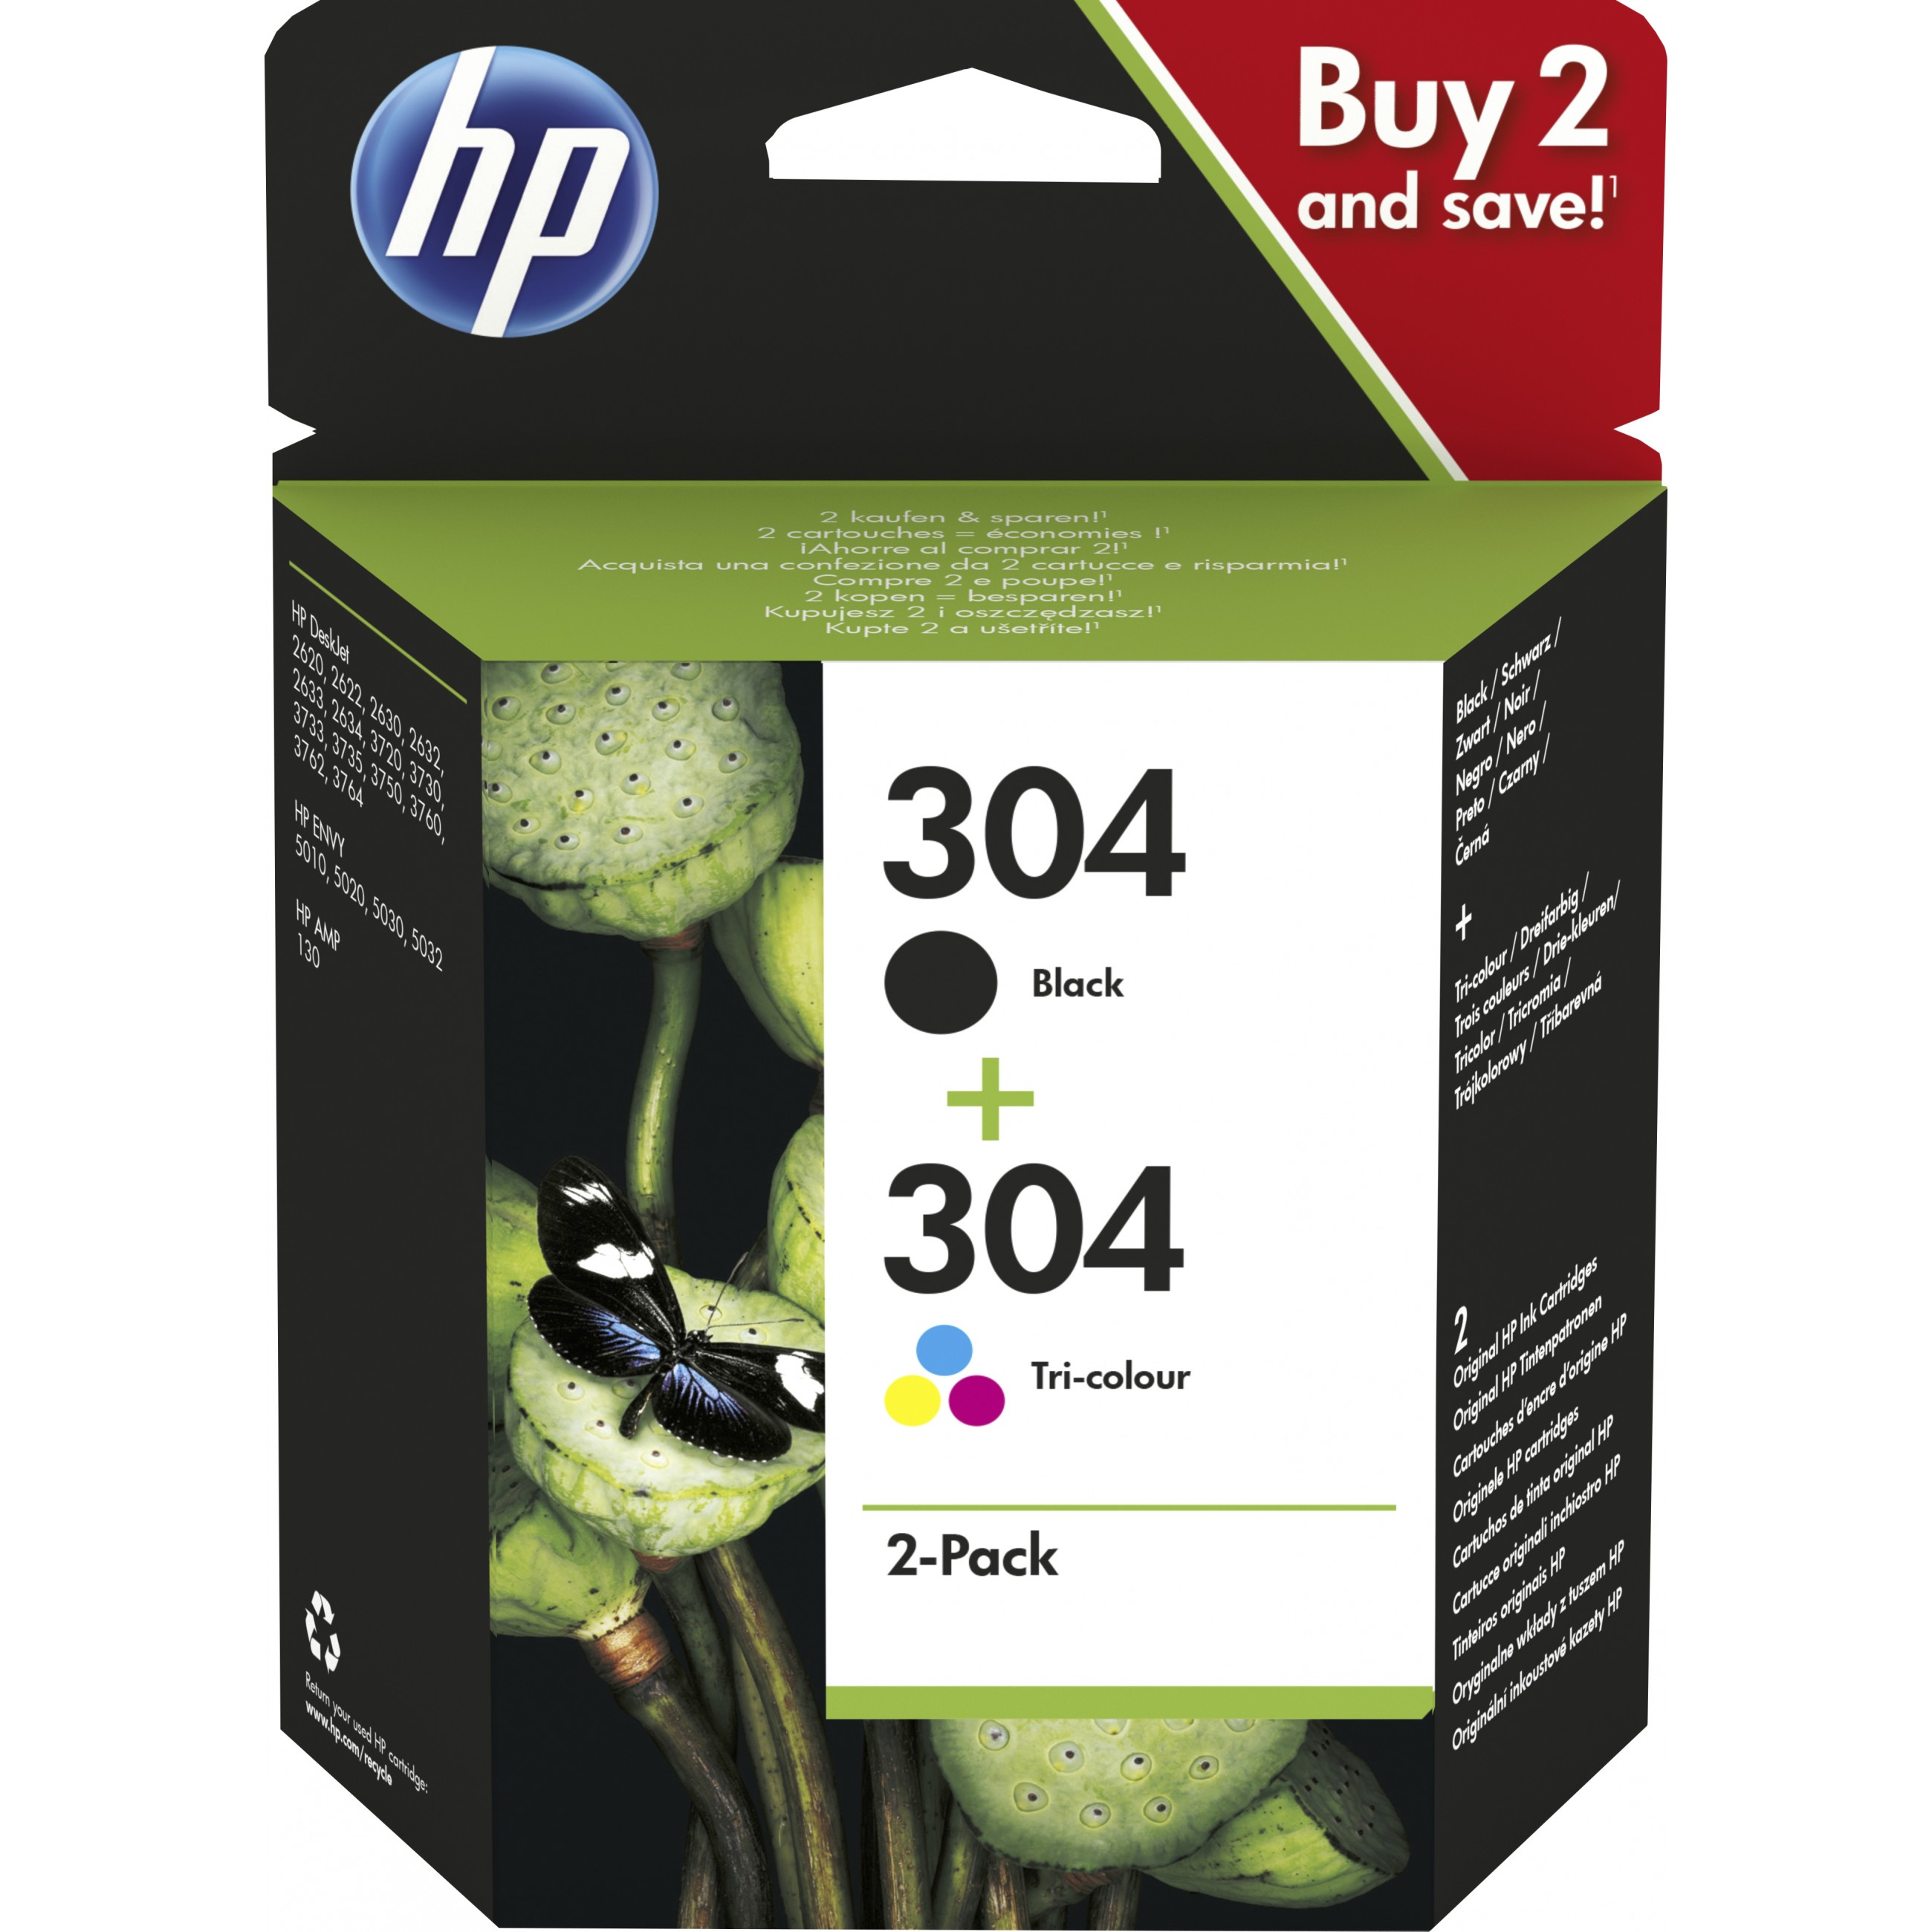 HP 304 2-pack Black/Tri-color Original Ink Cartridges ink cartridge - 3JB05AE